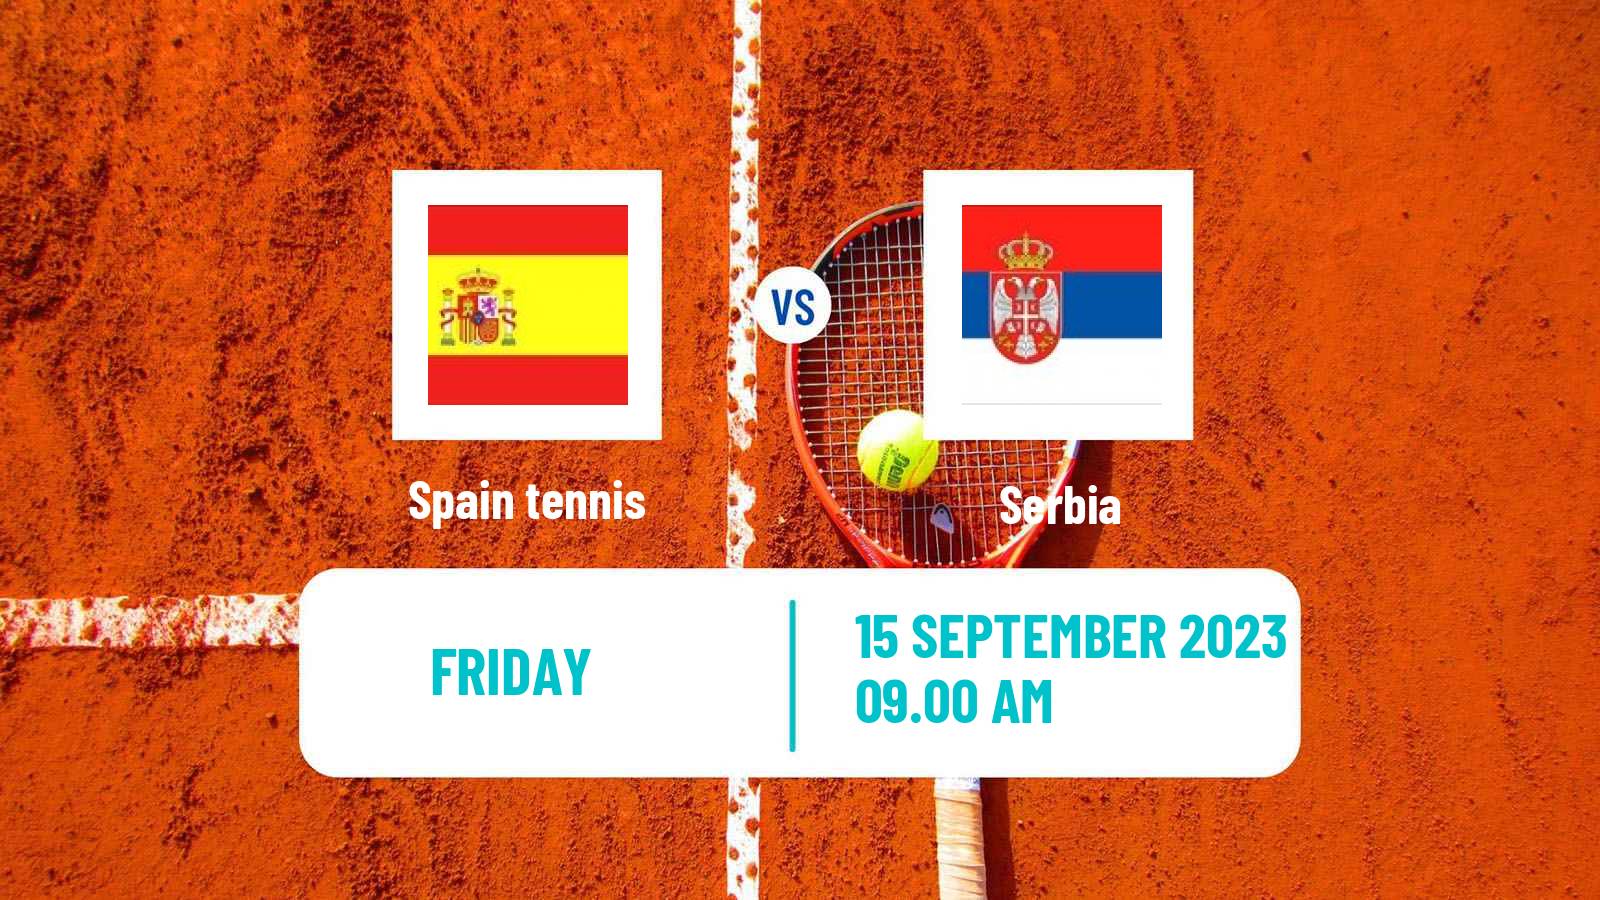 Tennis Davis Cup - World Group Teams Spain - Serbia